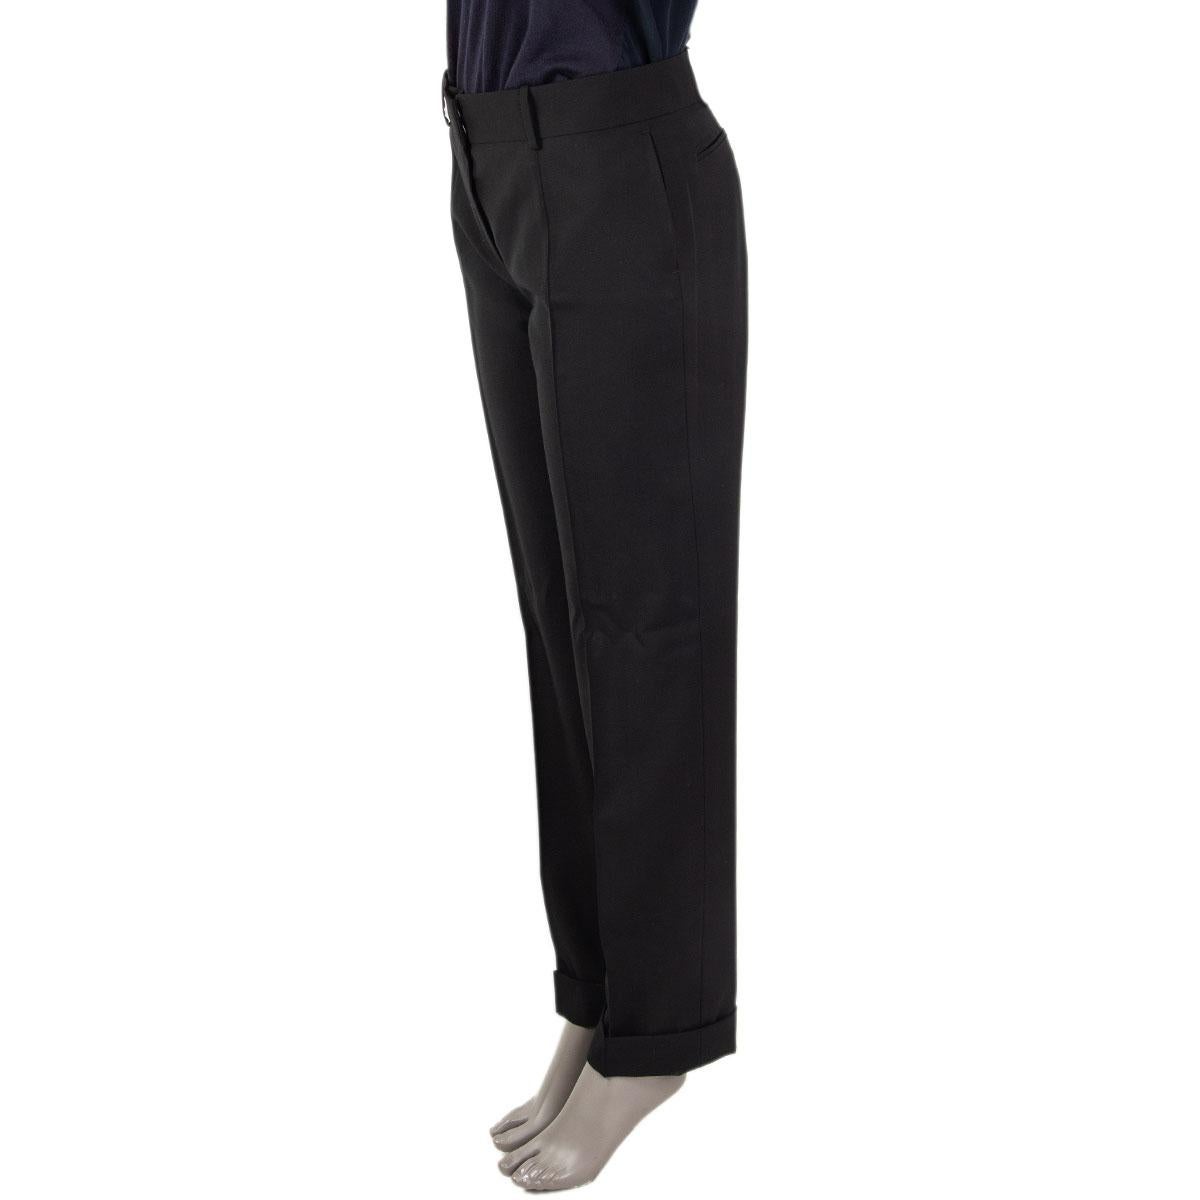 100% authentische klassische Balenciaga Hose mit geradem Bein aus schwarzer Wolle (100%) mit Gürtelschlaufen und Bündchen am Saum. Schließt mit zwei Haken und einem verdeckten Reißverschluss auf der Vorderseite und mit Schlitztaschen auf der